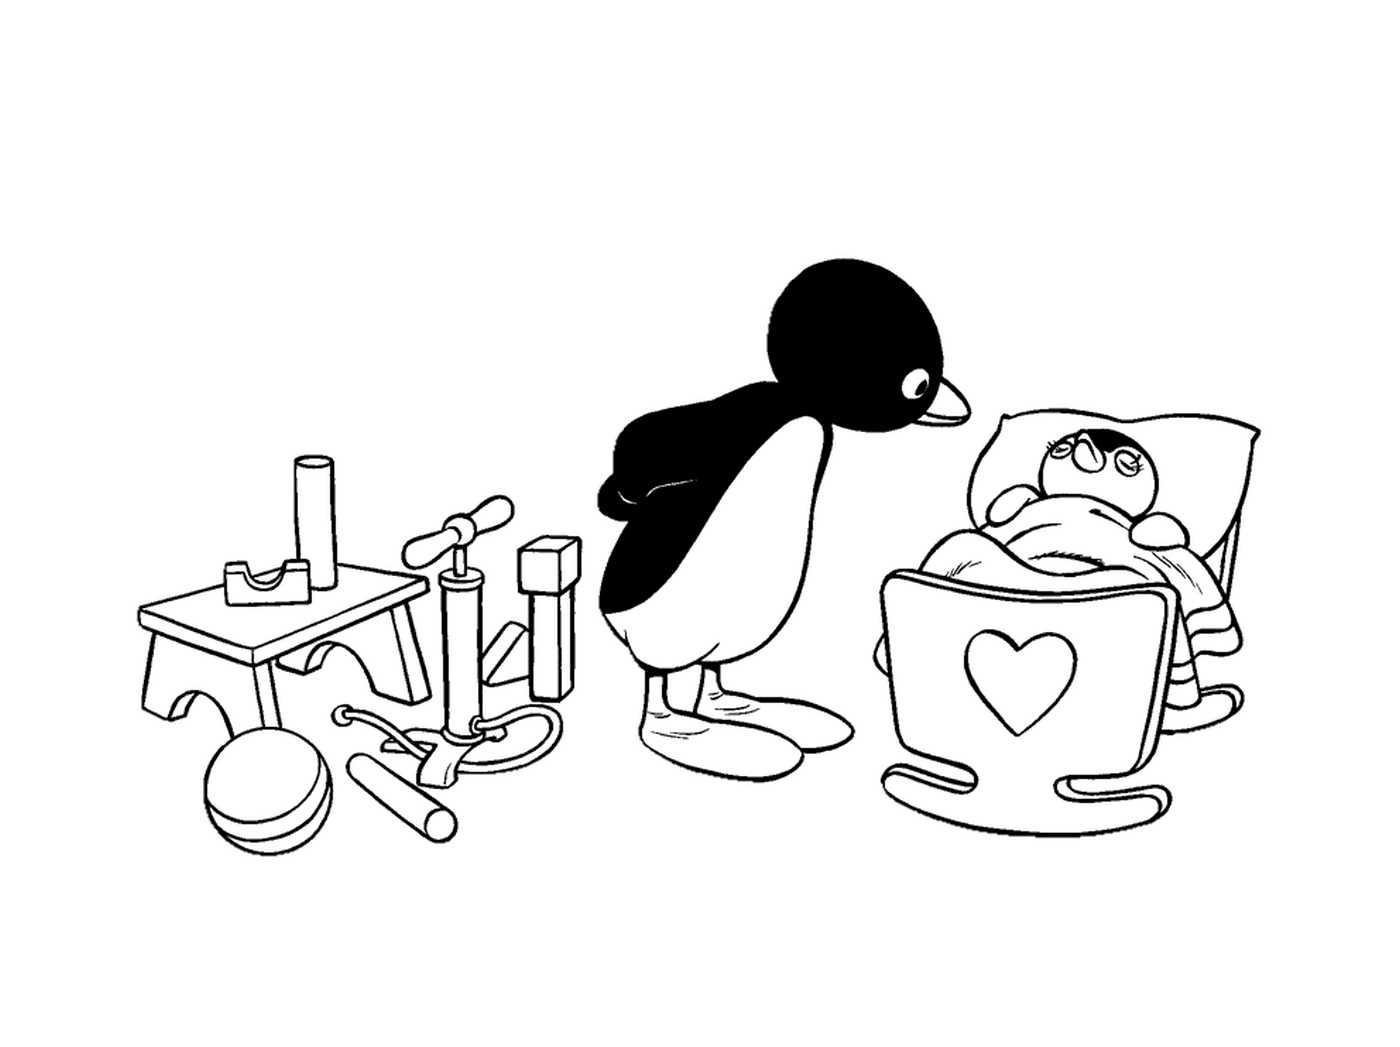  企鹅和小企鹅在碗里 